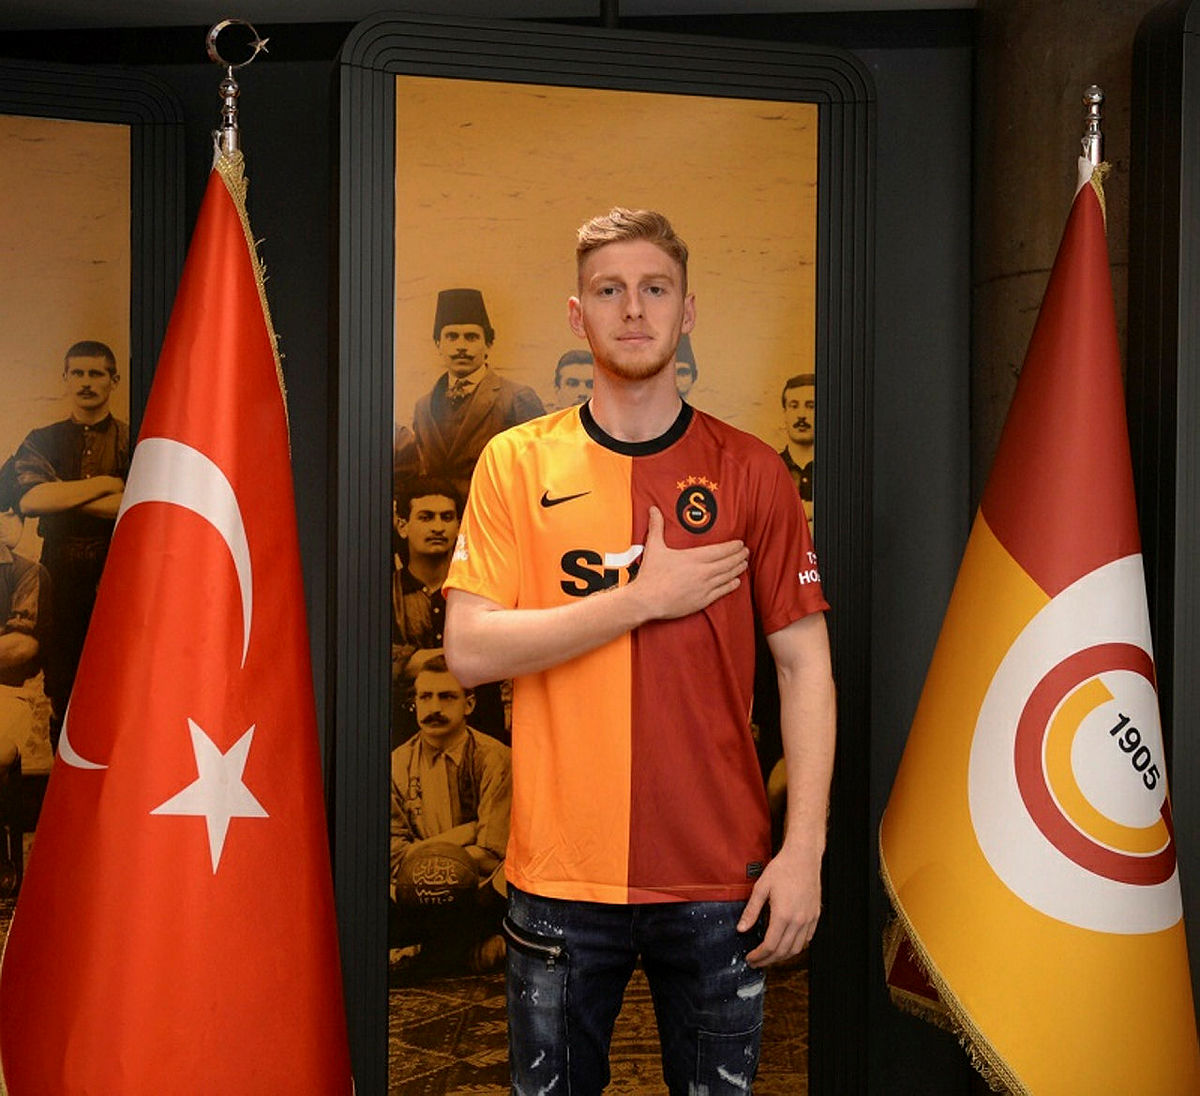 Prensip anlaşmasına varıldı! Galatasaray Ayberk Karapo’yu transfer ediyor